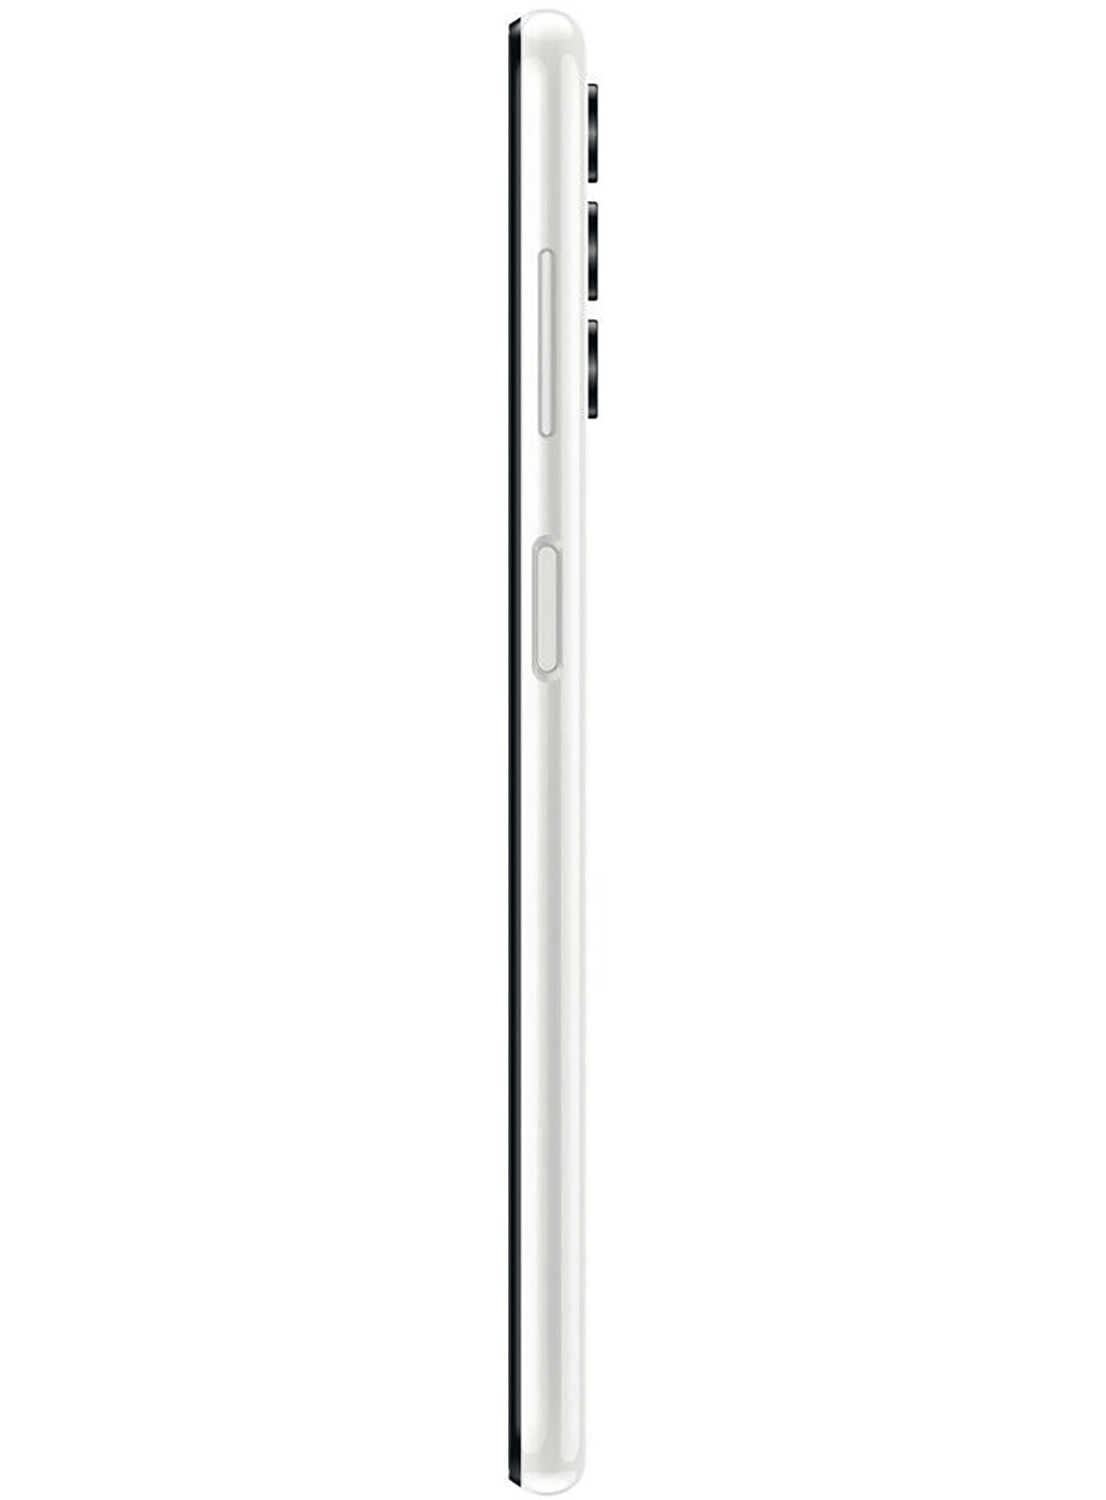 Samsung Galaxy A13 SM-A137F/DS